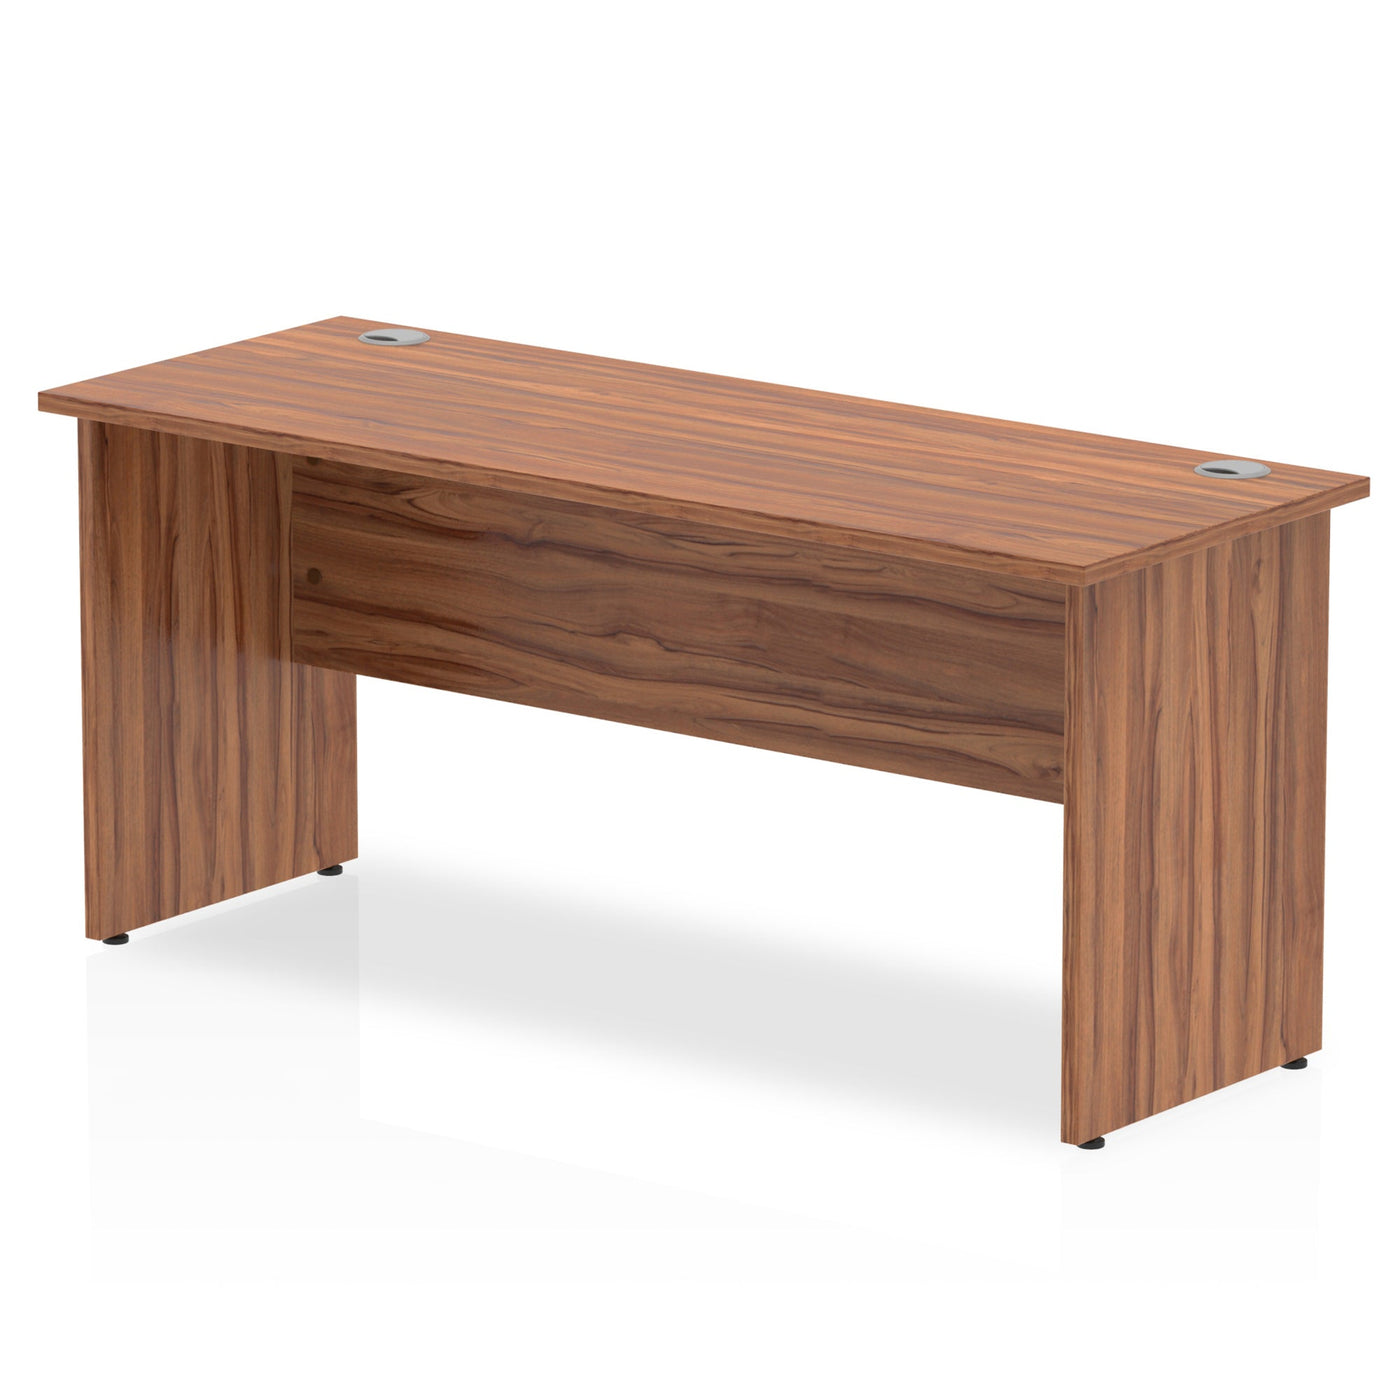 Impulse 1600mm Slimline Home Office Desk | Panel End Desk | Home Office Furniture | Homework Desk | Work From Home Desk | Wooden Desk